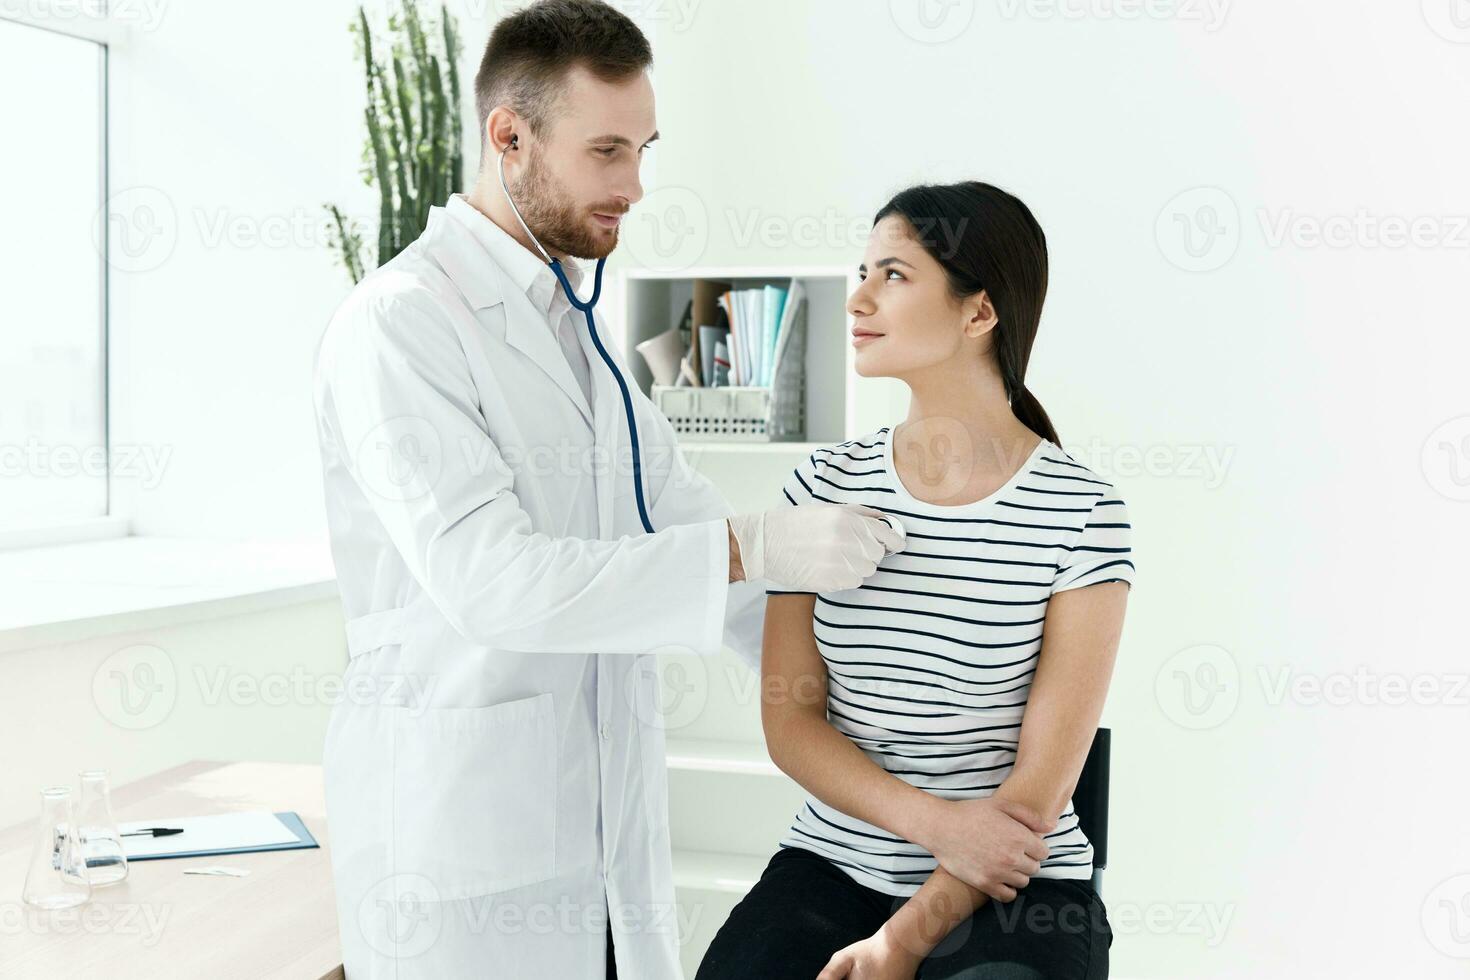 une médecin avec une stéthoscope examine une patient dans une hôpital photo